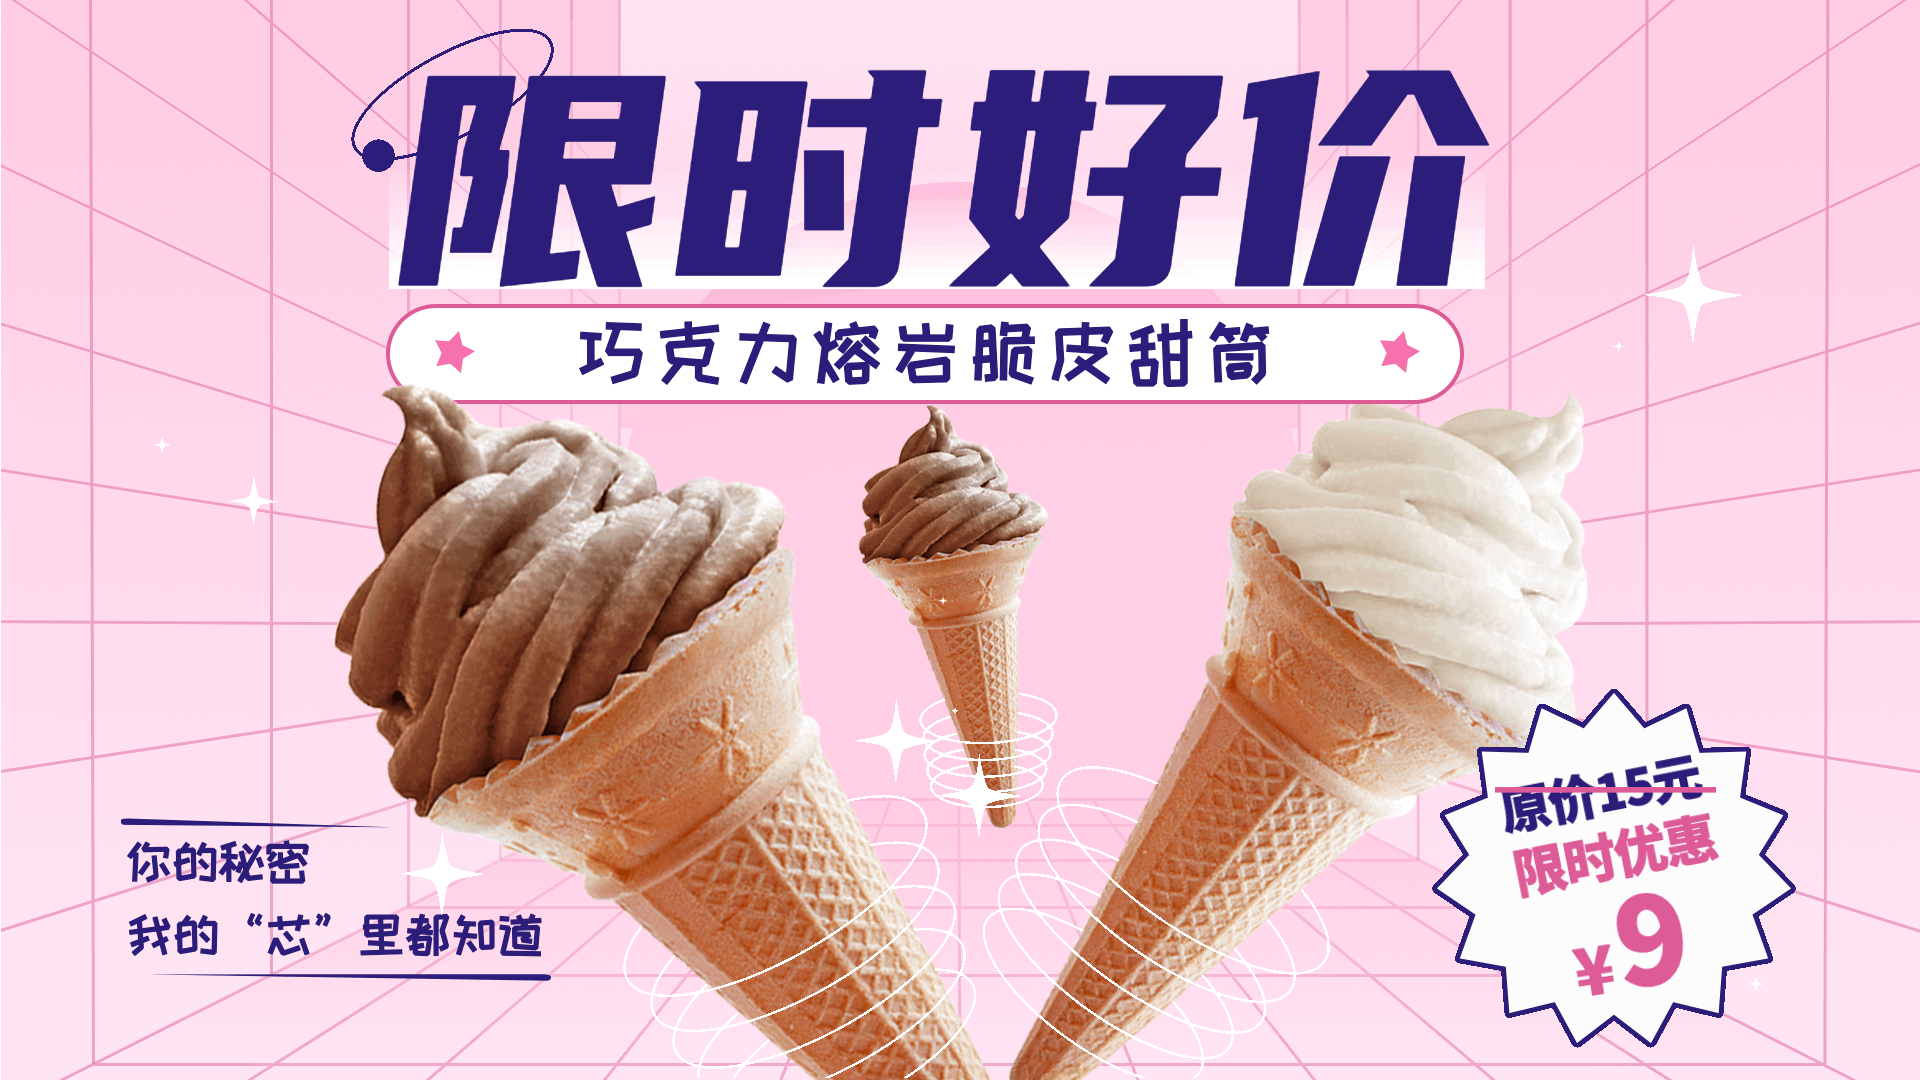 冰淇凌商品推荐促销横屏动图